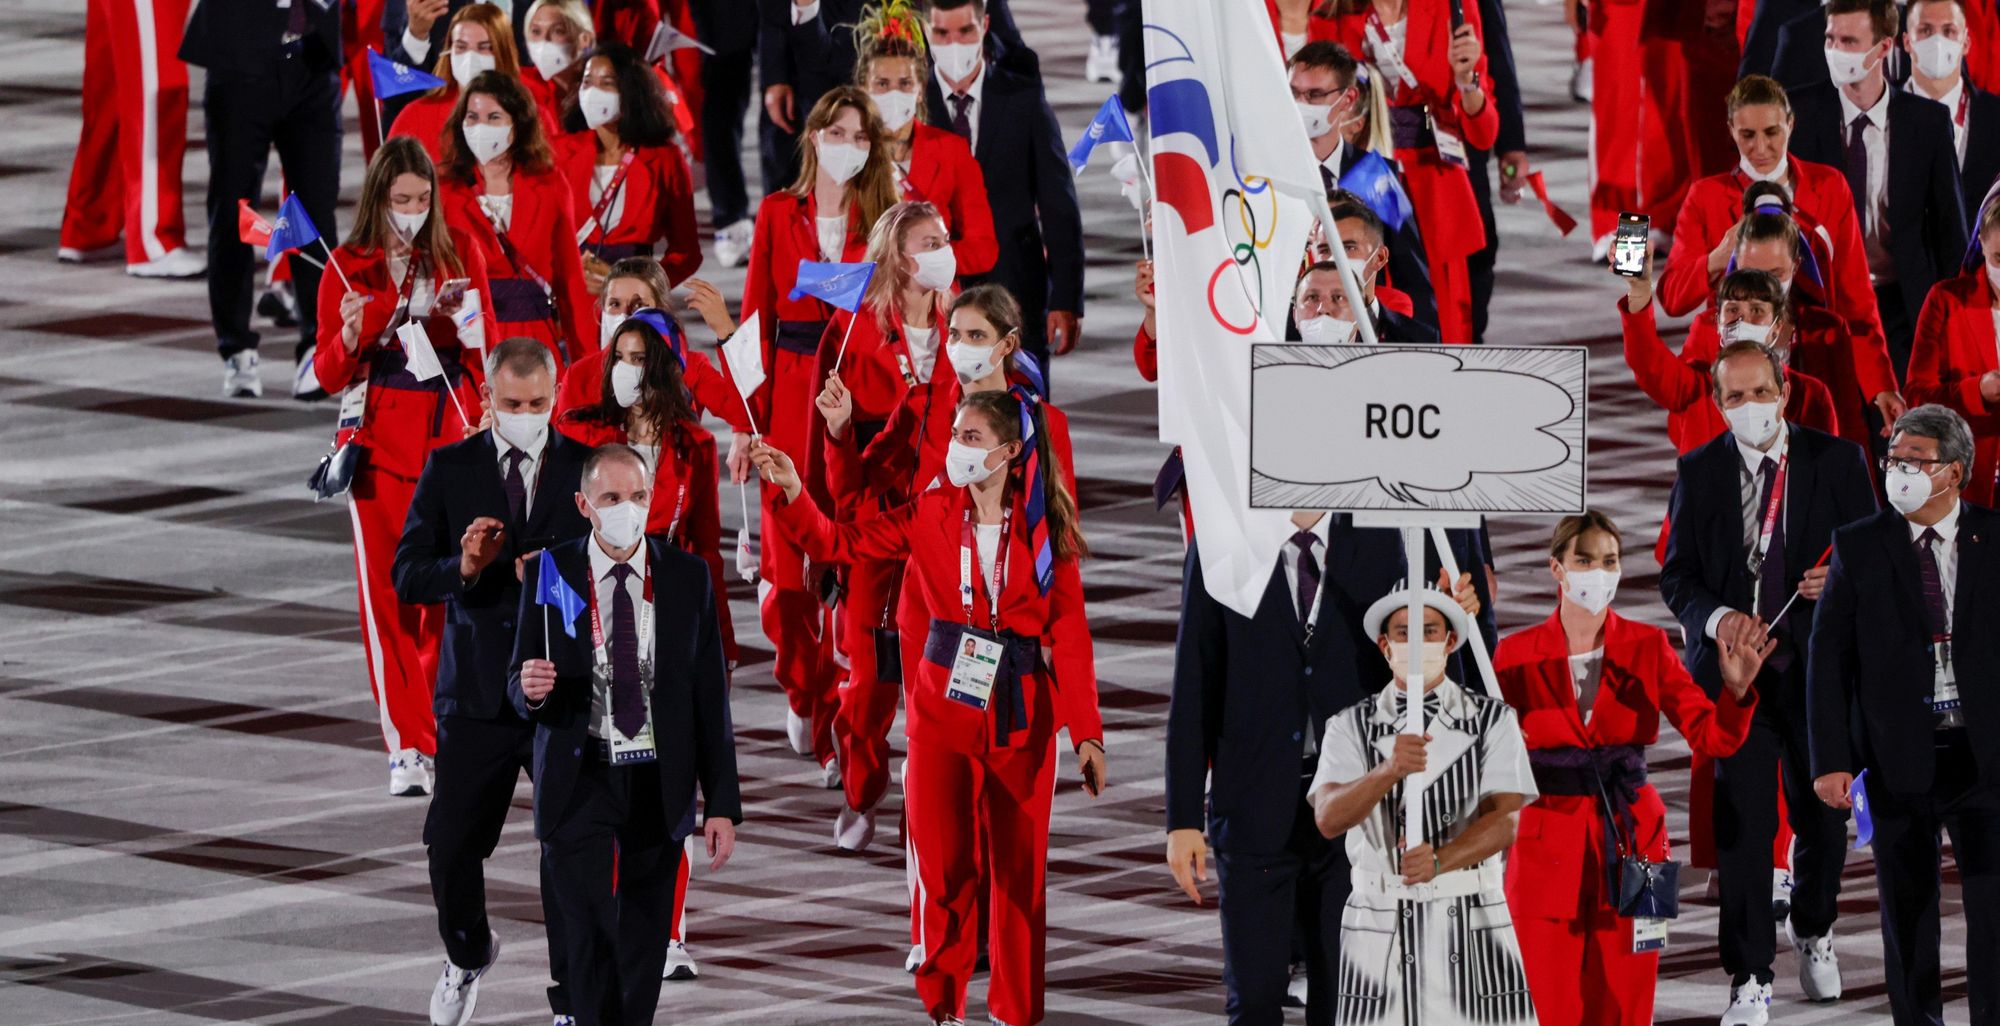 Atletas russos entrando na cerimônia de abertura dos Jogos Olímpicos de Tóquio-2020; eles estarão aptos a competirem em Paris-2024 como neutros, assim como belarussos